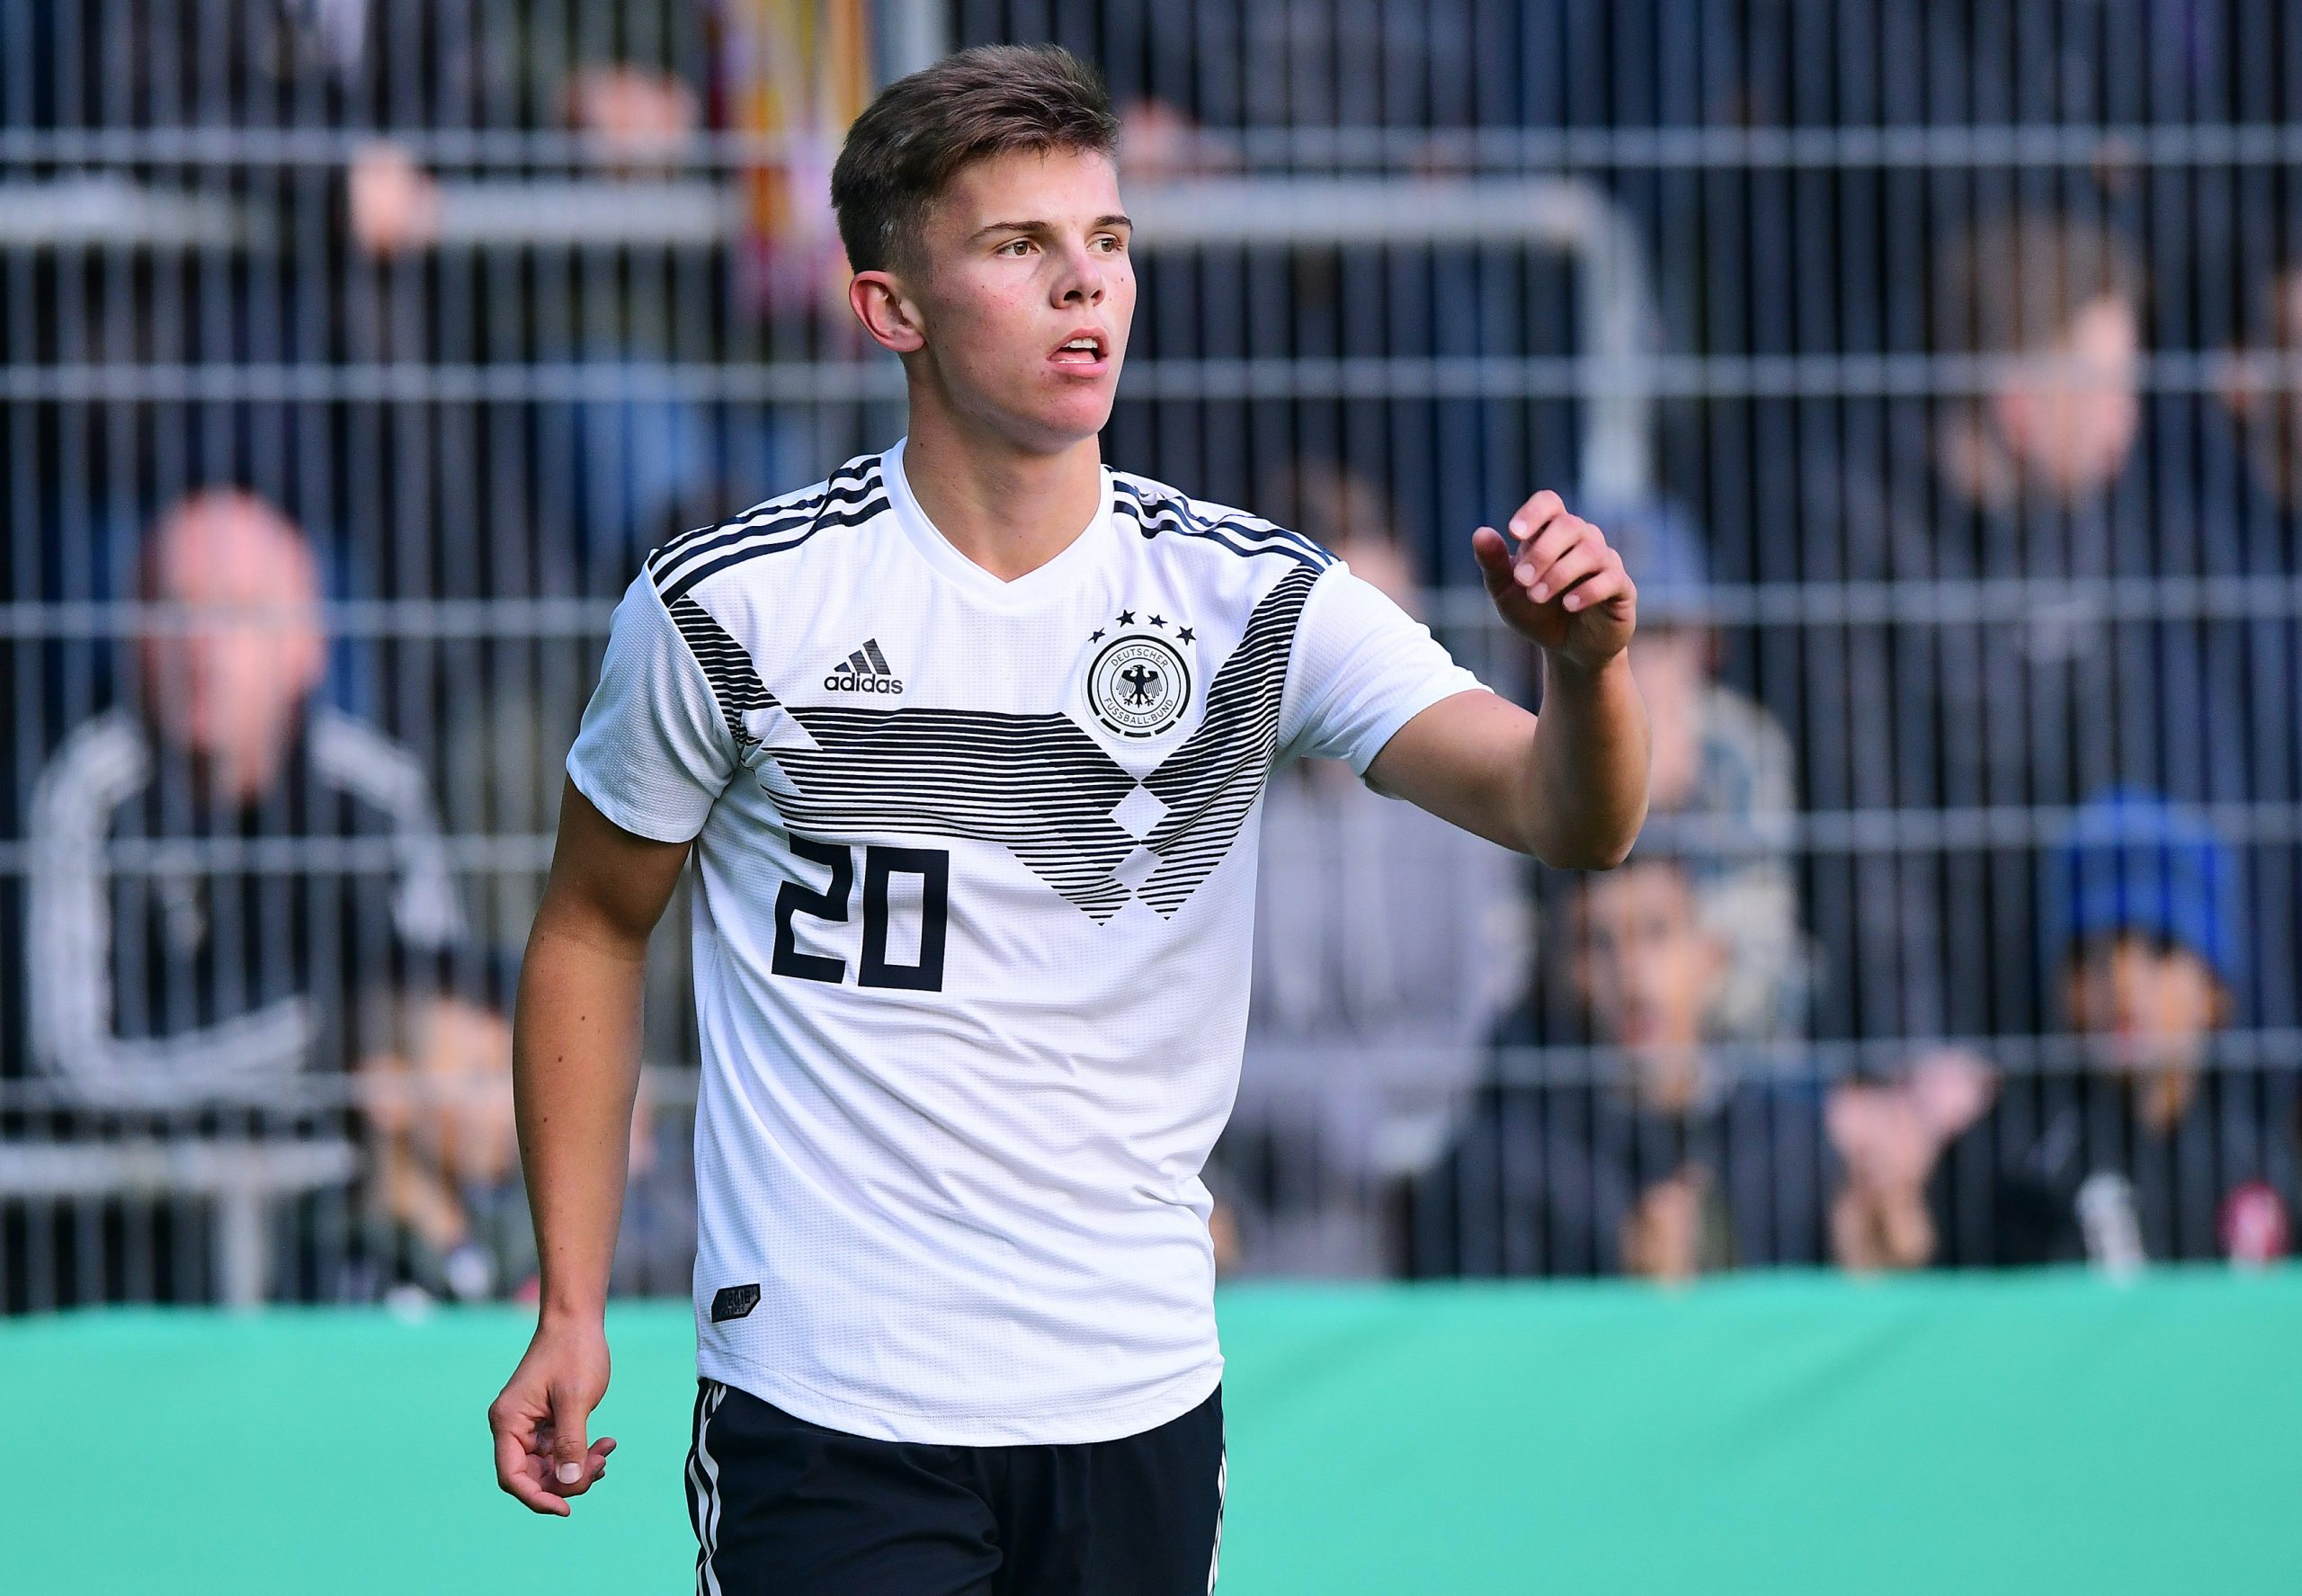 Erstmals für die U21 des DFB nominiert: Finn Ole Becker